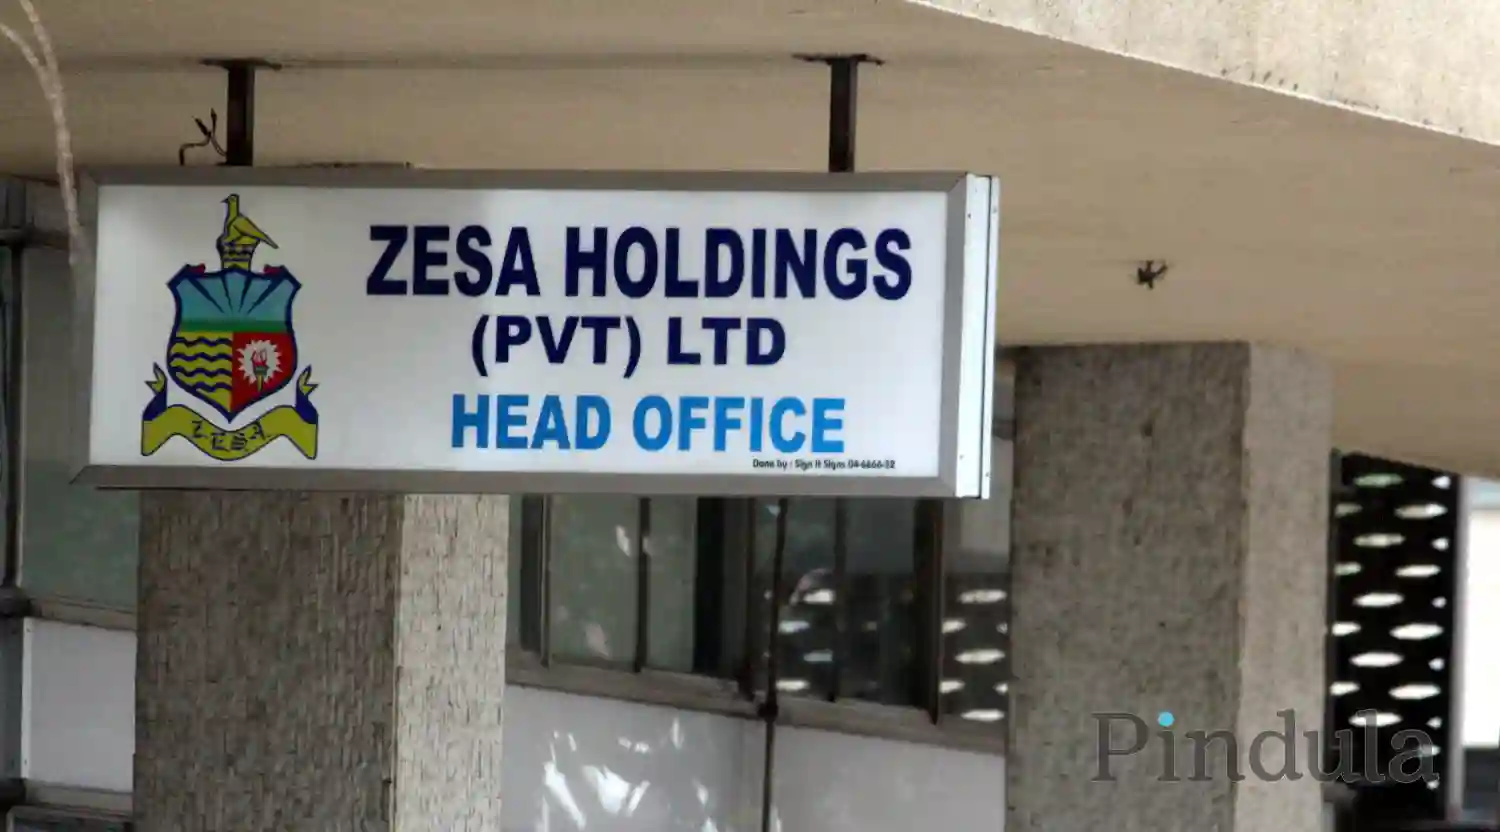 Former ZESA CEO, Senior Managers Arrested Over Bad Governance